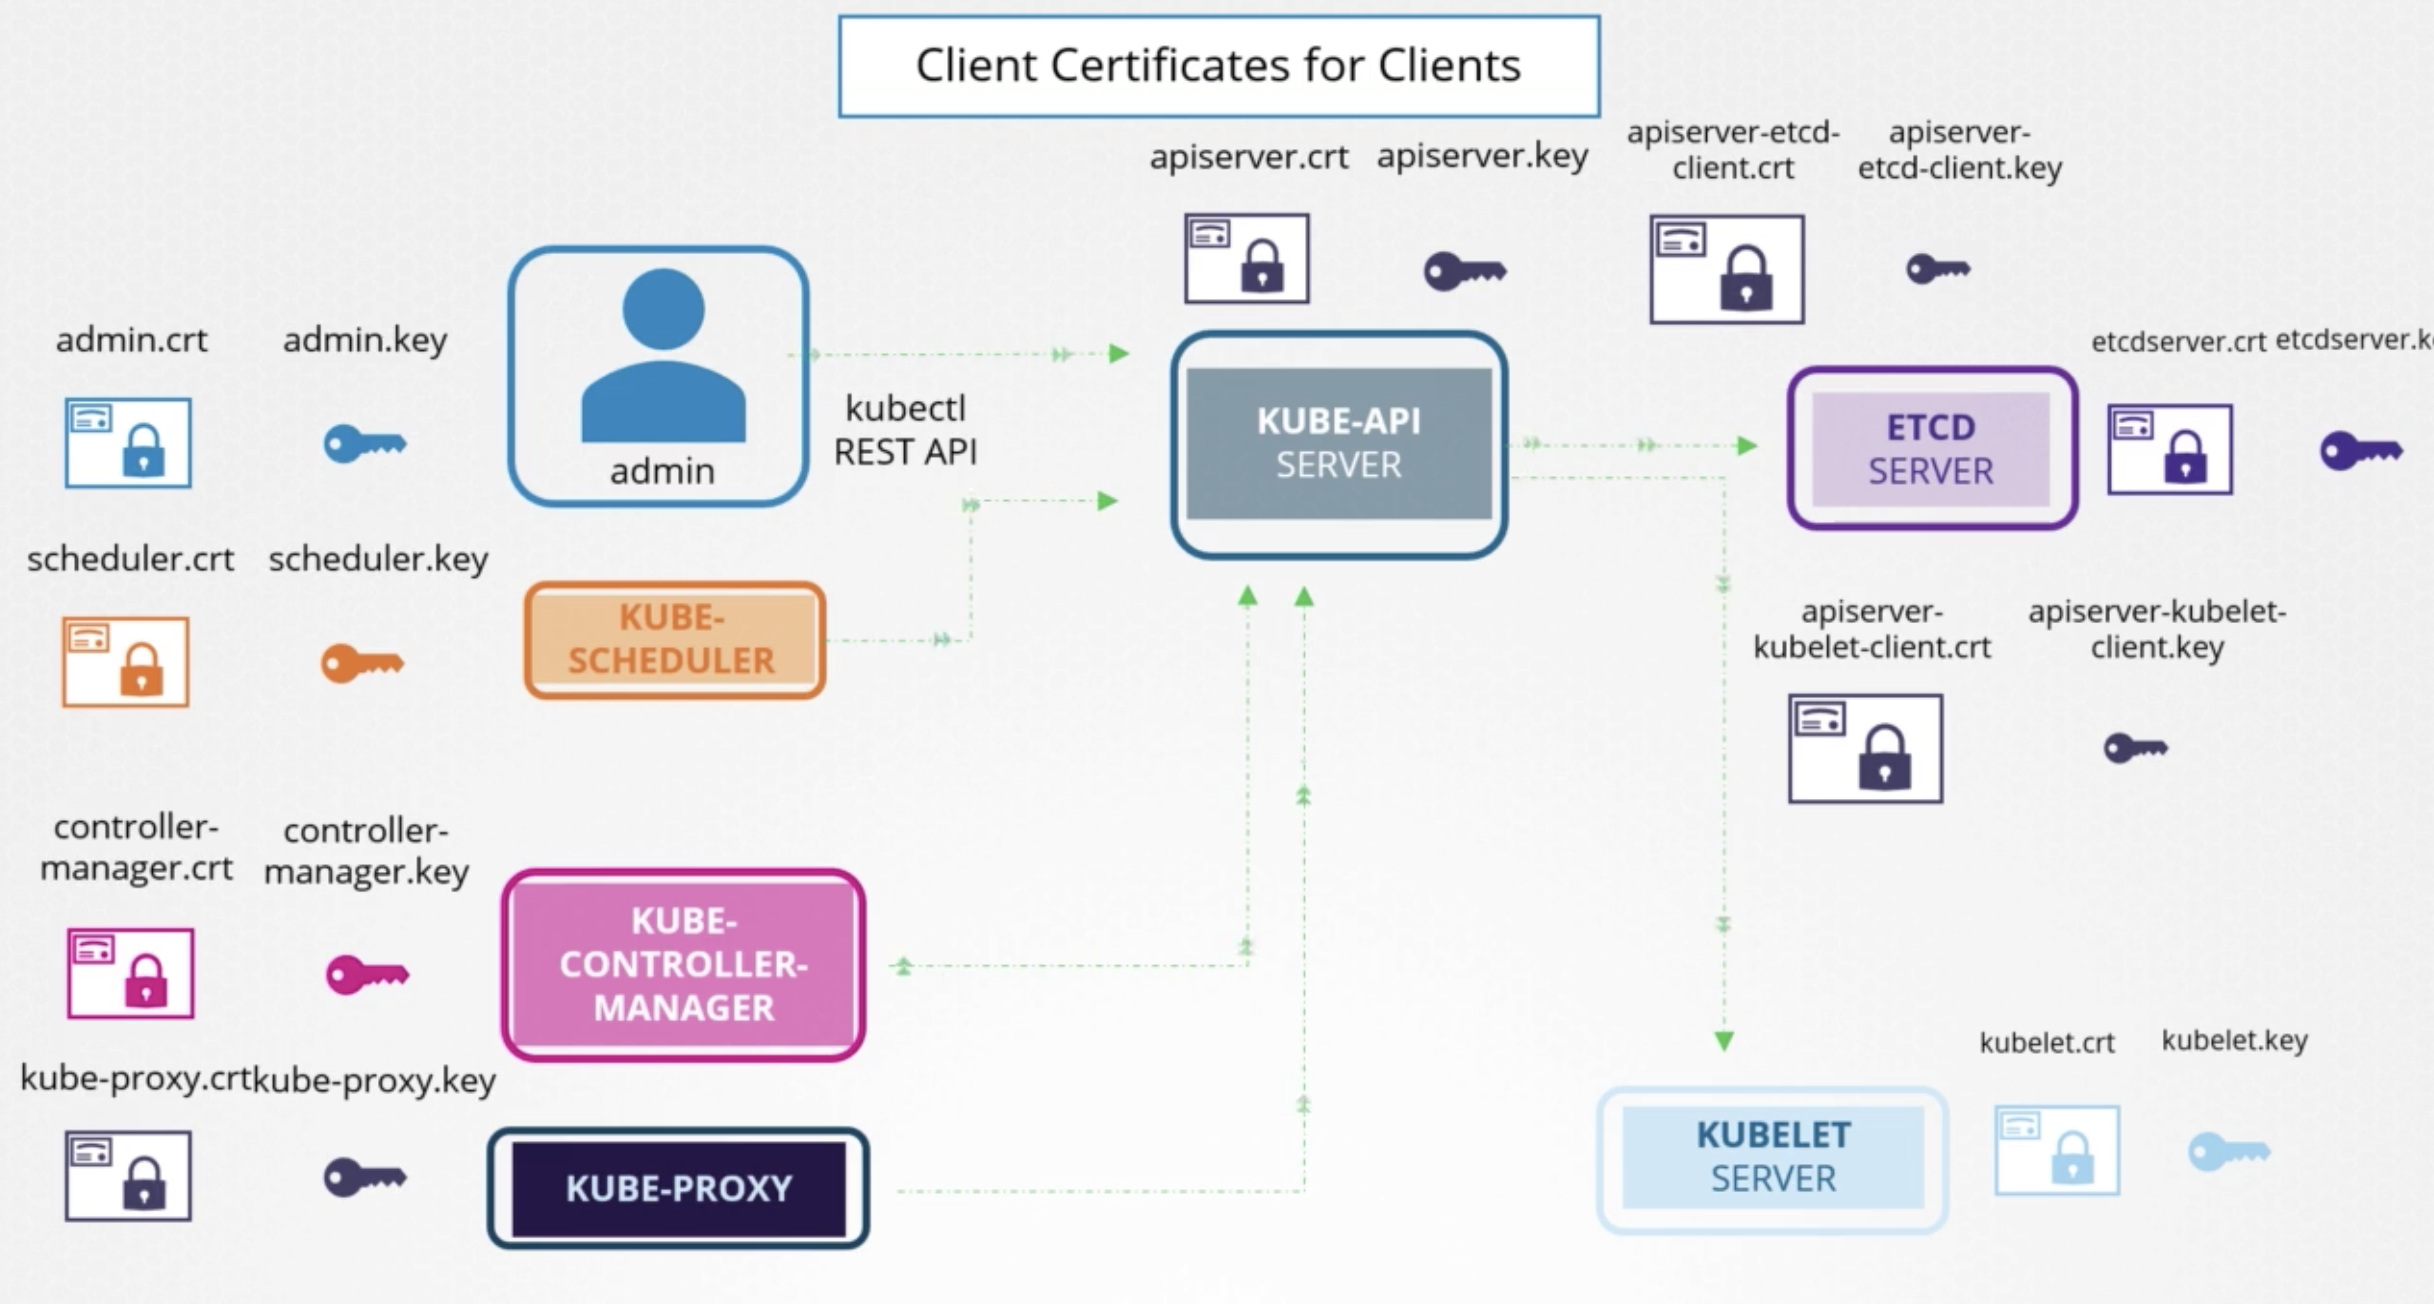 client-certificates-for-clients